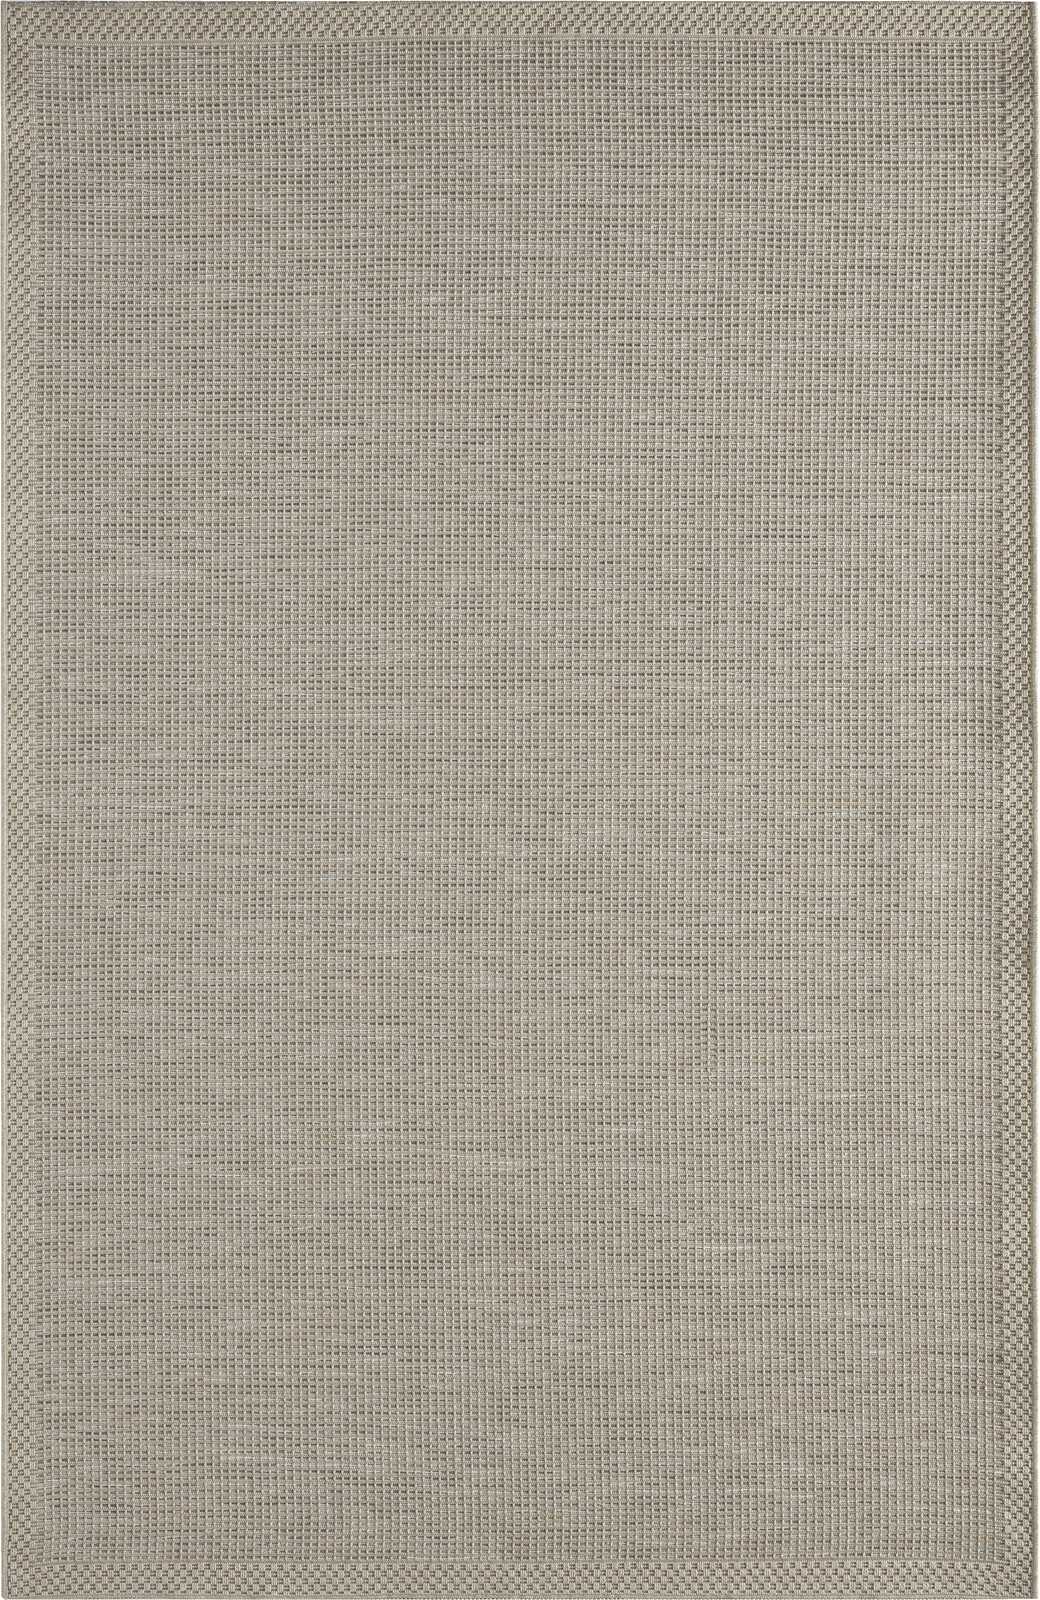             Flatweave Vloerkleed voor Buiten in Grijs - 280 x 200 cm
        